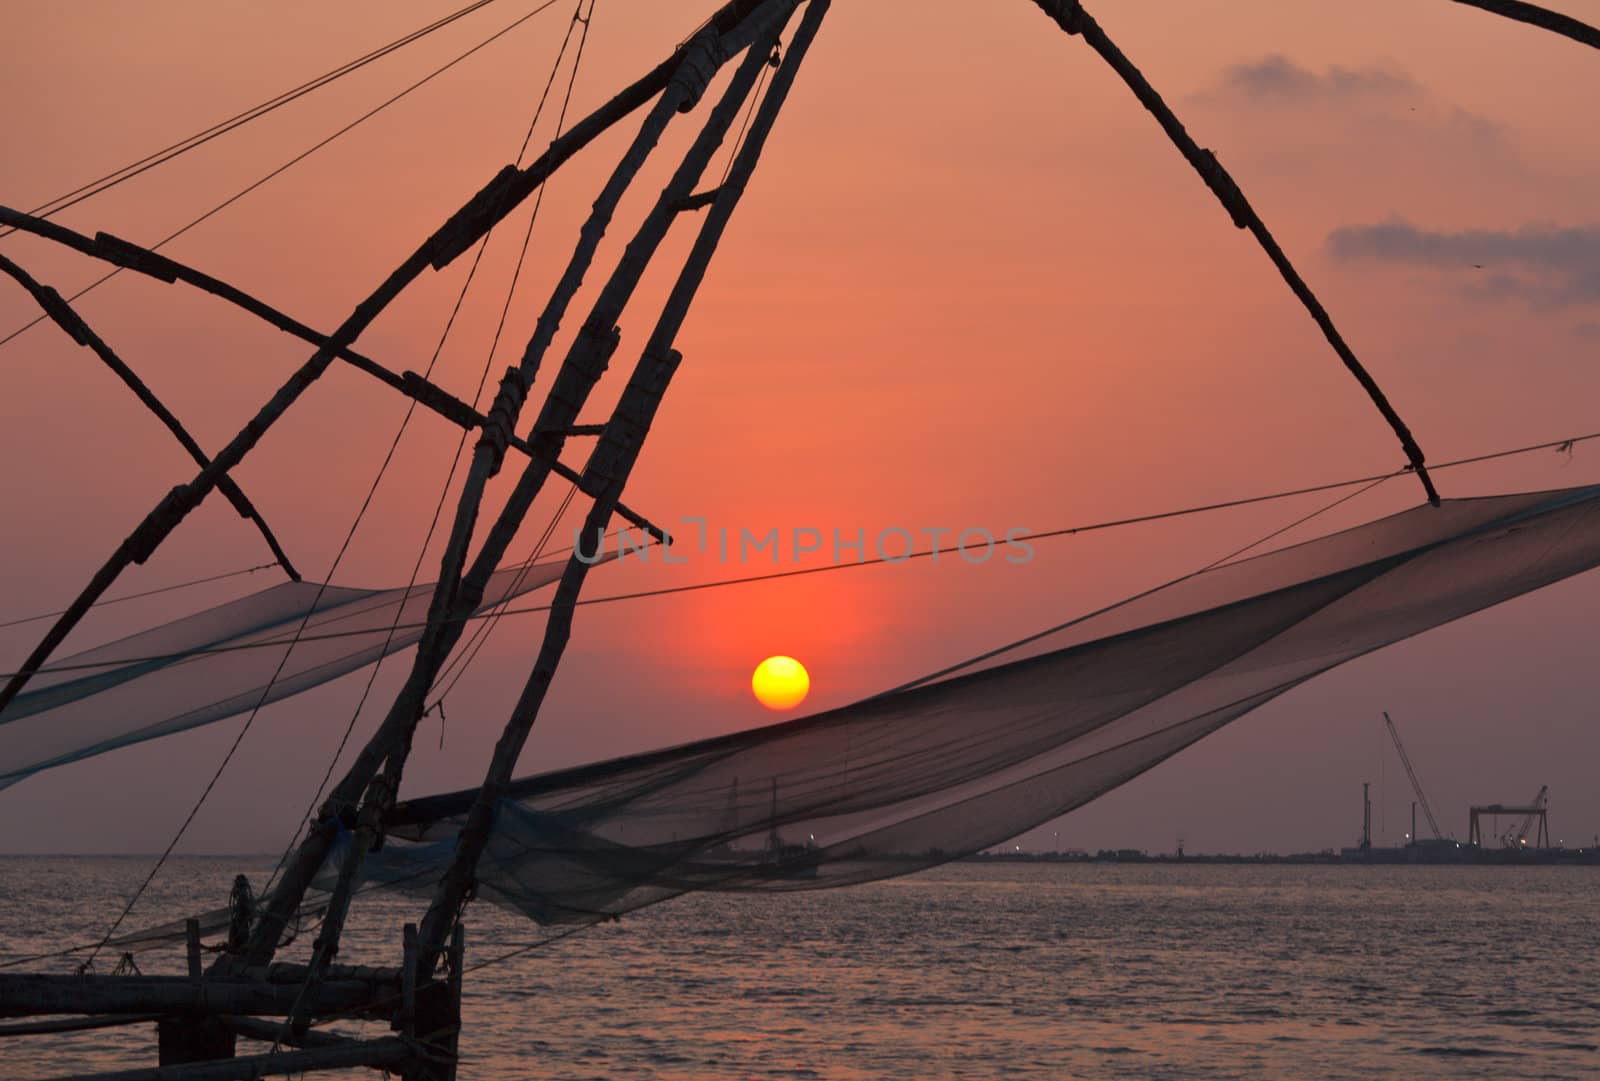 Chinese fishnets on sunset. Kochi, Kerala, India by dimol